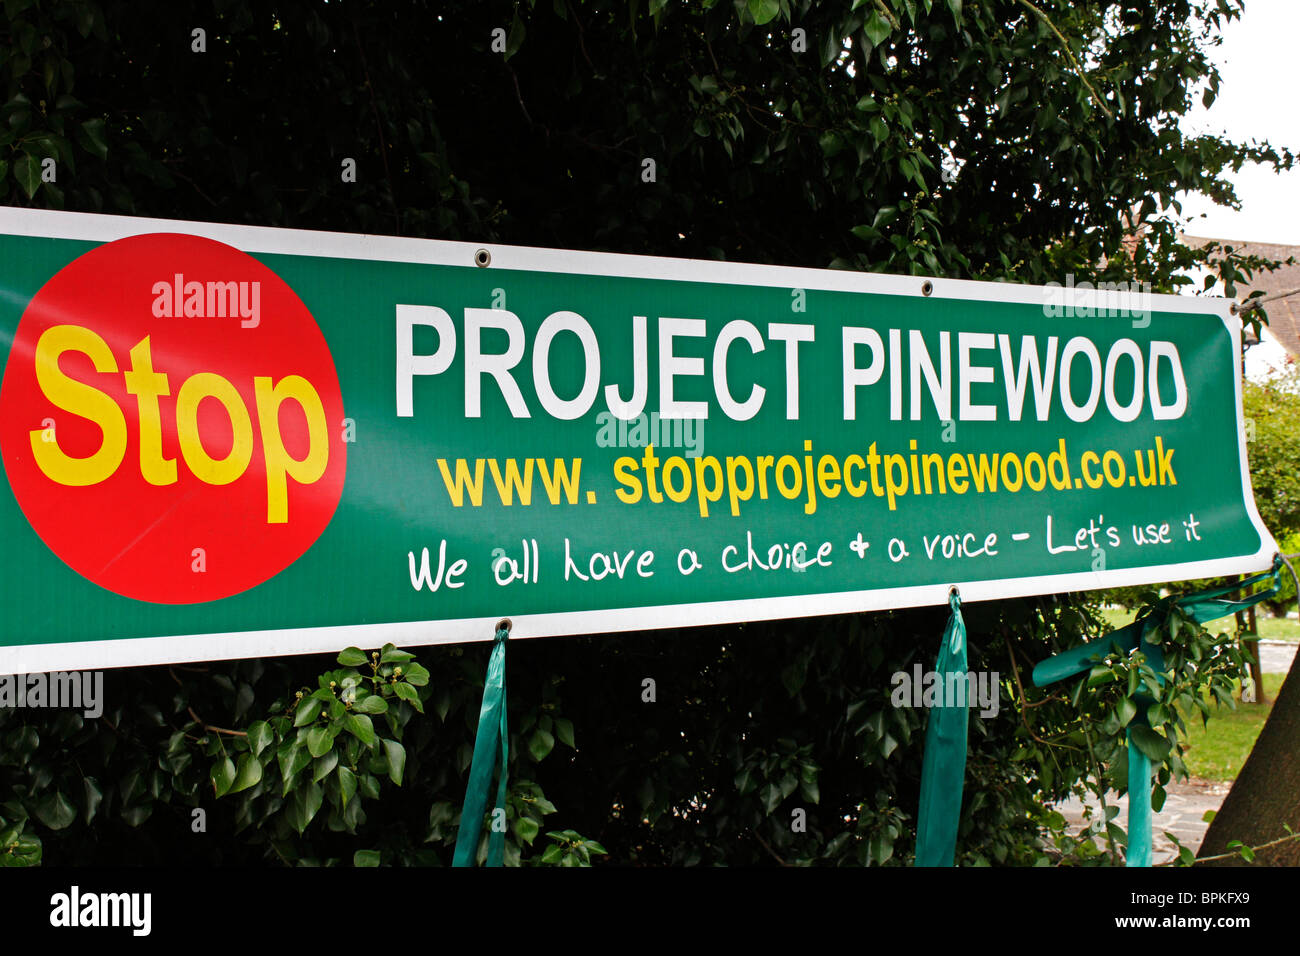 Protestieren Sie Banner, Projekt Pinewood eine großzügige Erweiterung der Pinewood Film- und Fernsehstudios auf der grünen Wiese zu stoppen. Stockfoto